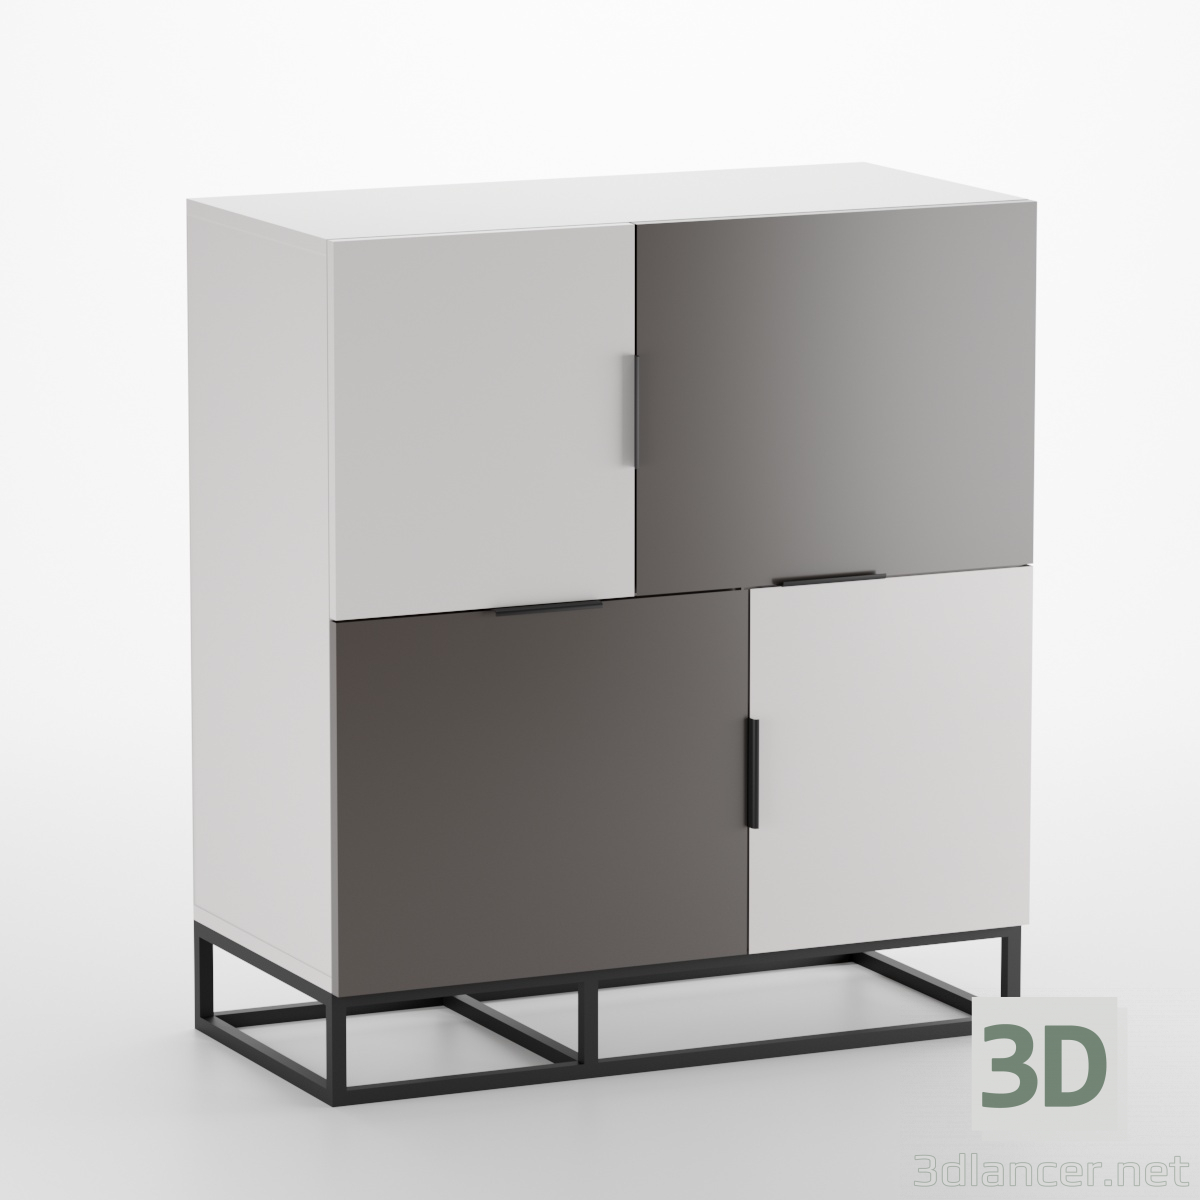 Cajonera-Loft-Pure-4-puertas 3D modelo Compro - render